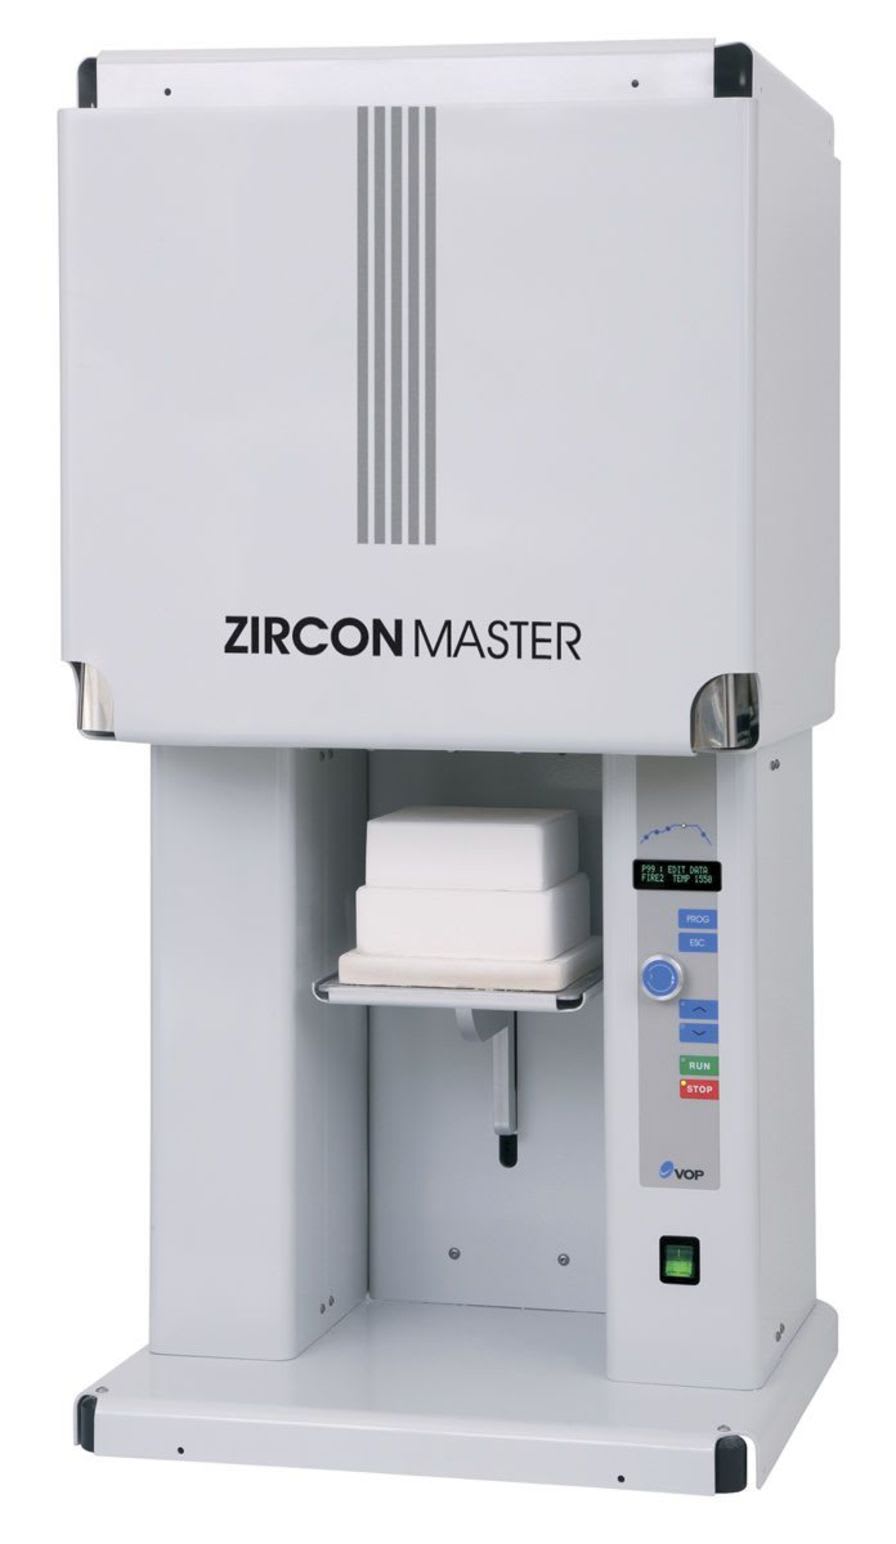 Sintering furnace / dental laboratory / zirconia ZirconMaster VOP